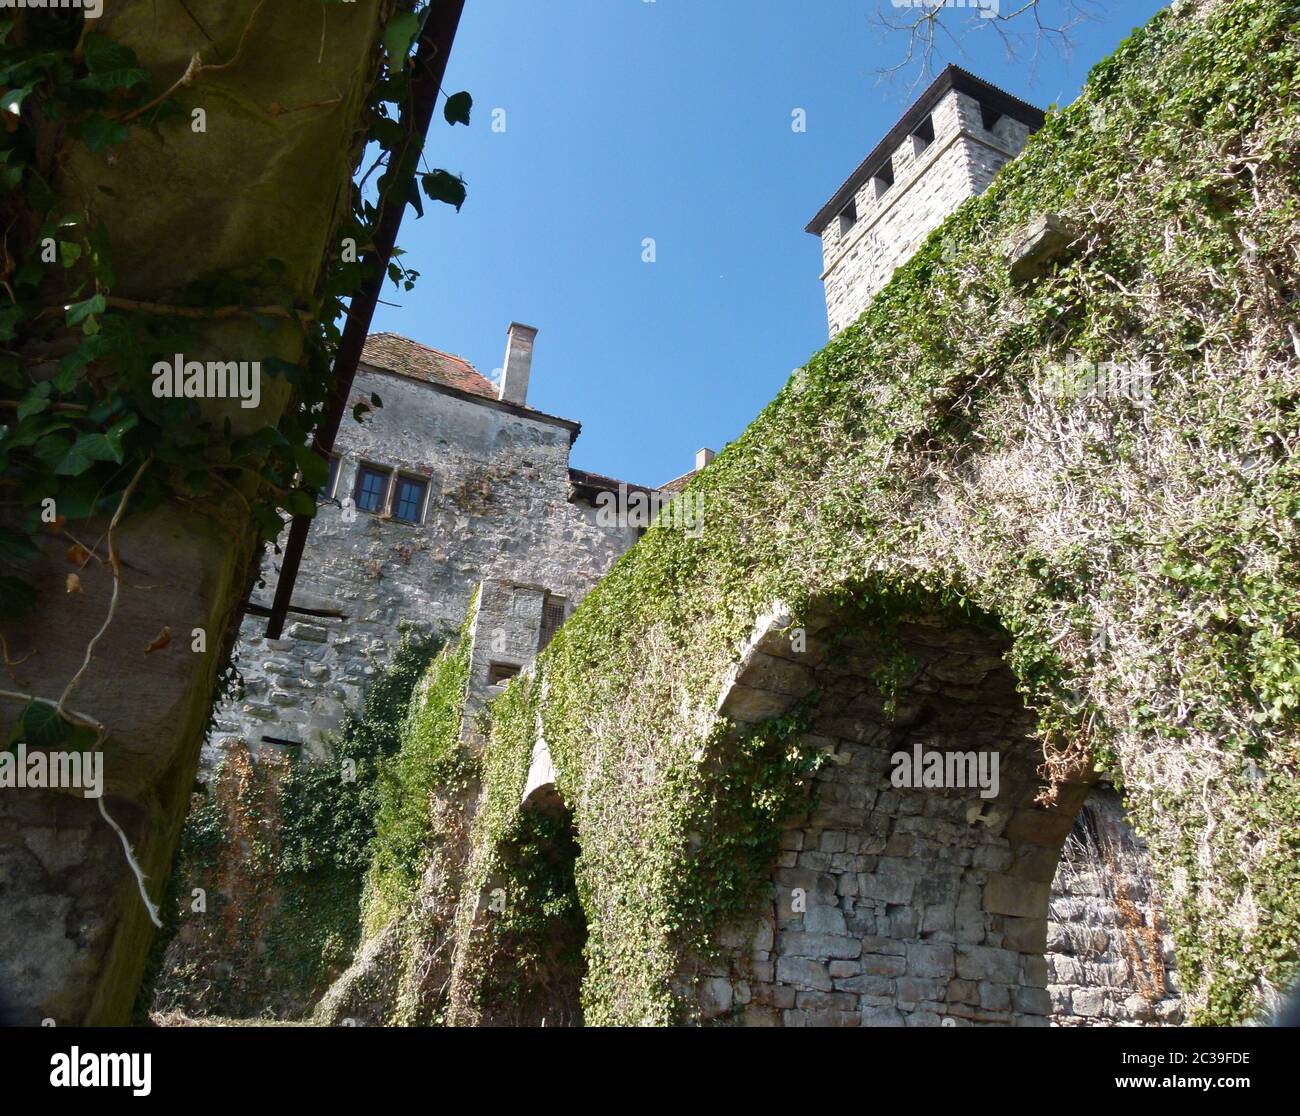 Festungsmauer mit Torbogen eines Schlosskomplexes aus dem frühen Mittelalter Stockfoto